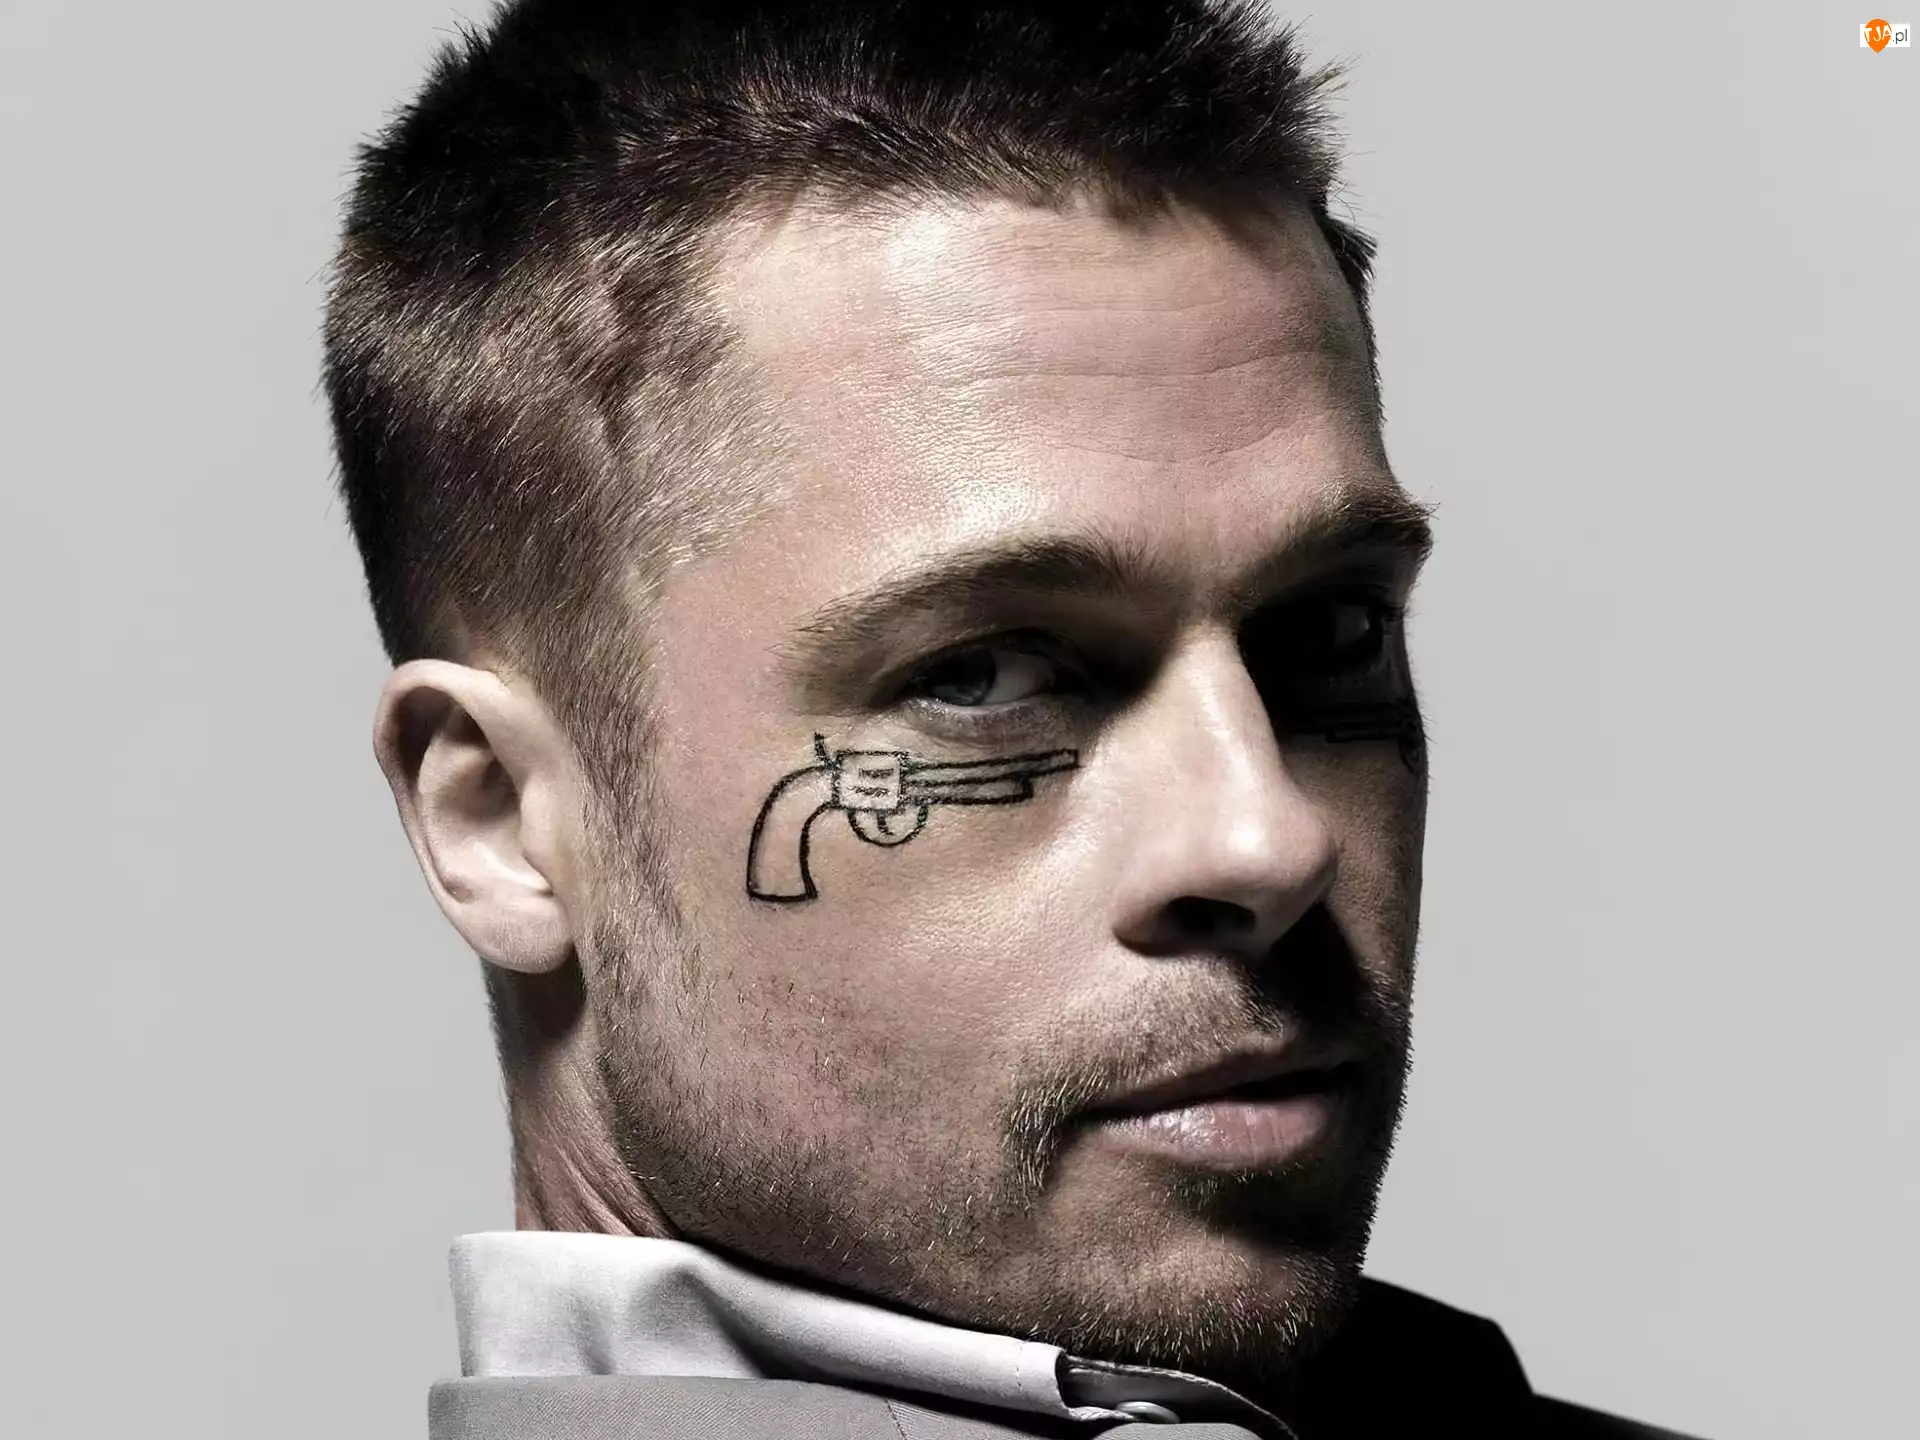 Zarost
































66

















+, Brad Pitt, Tatuaż